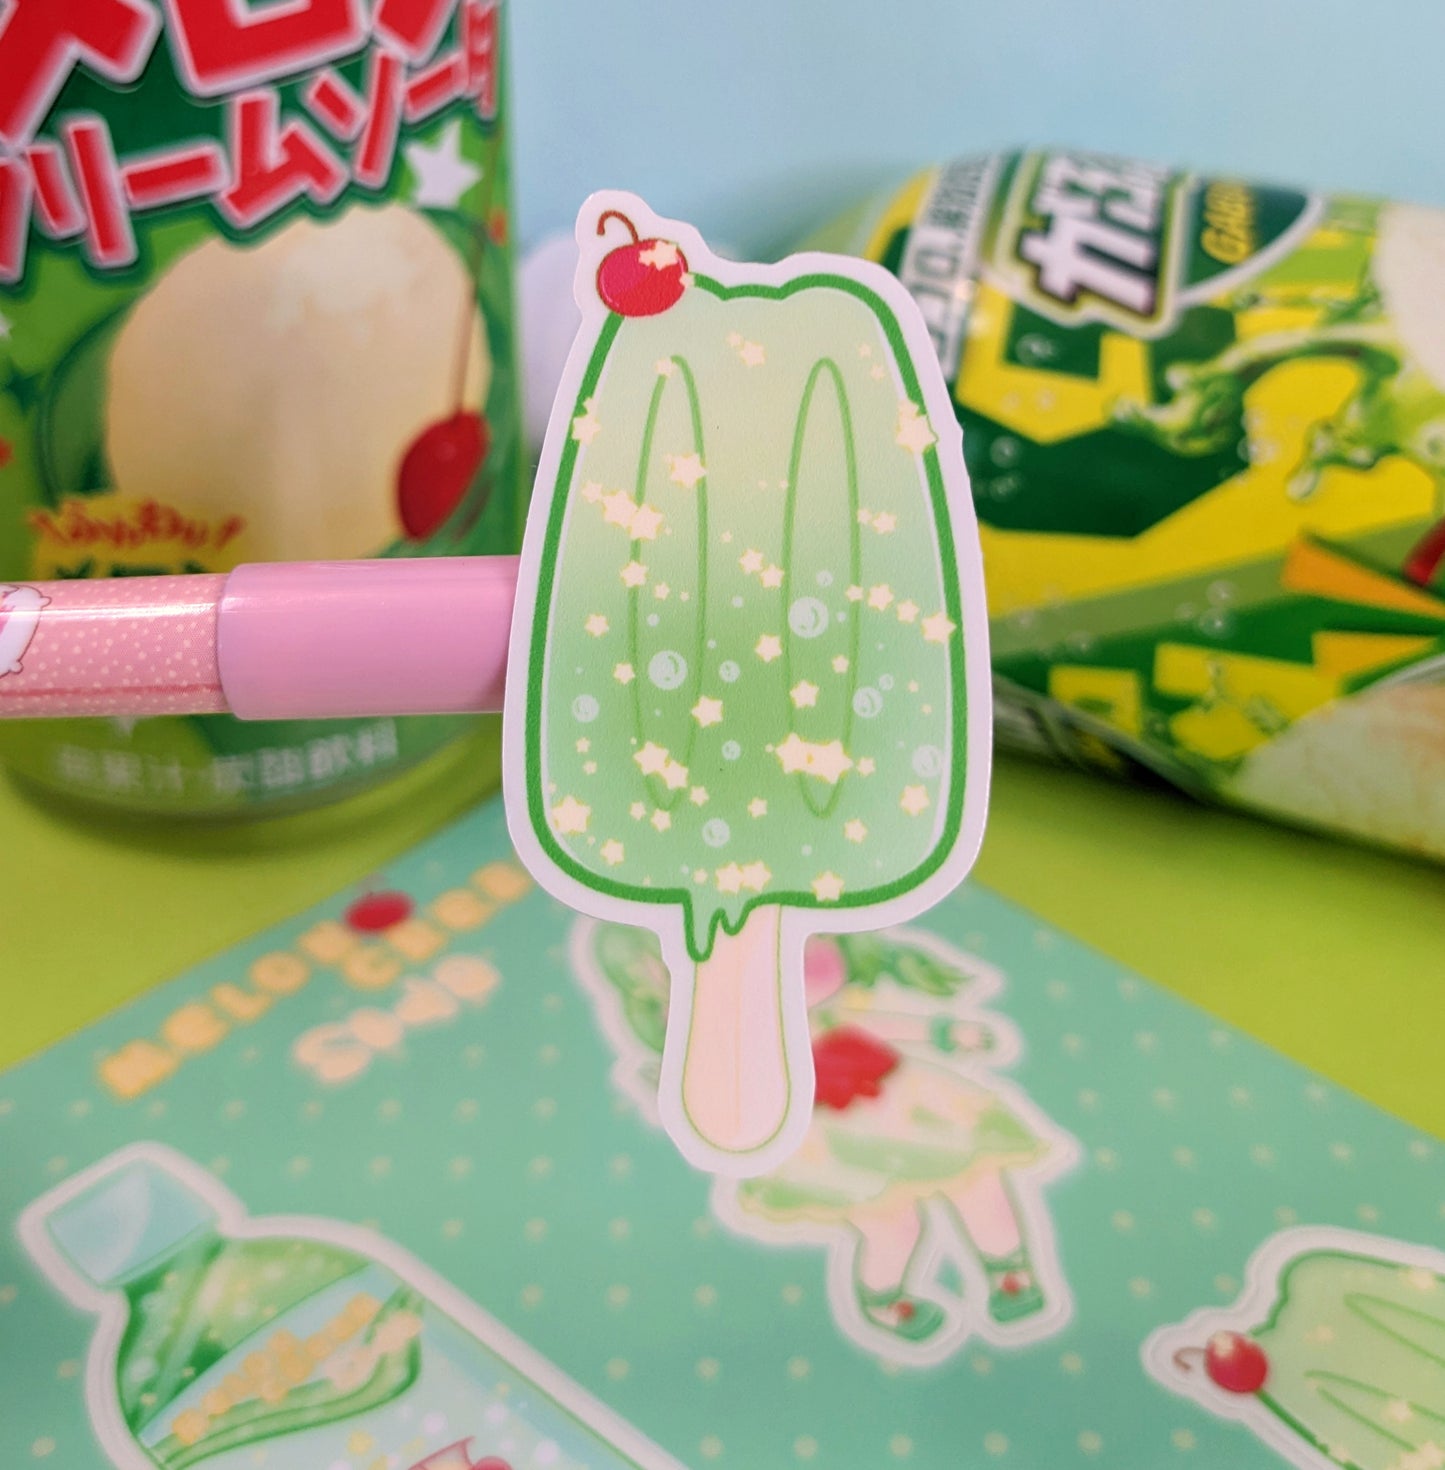 Melon cream soda stickers